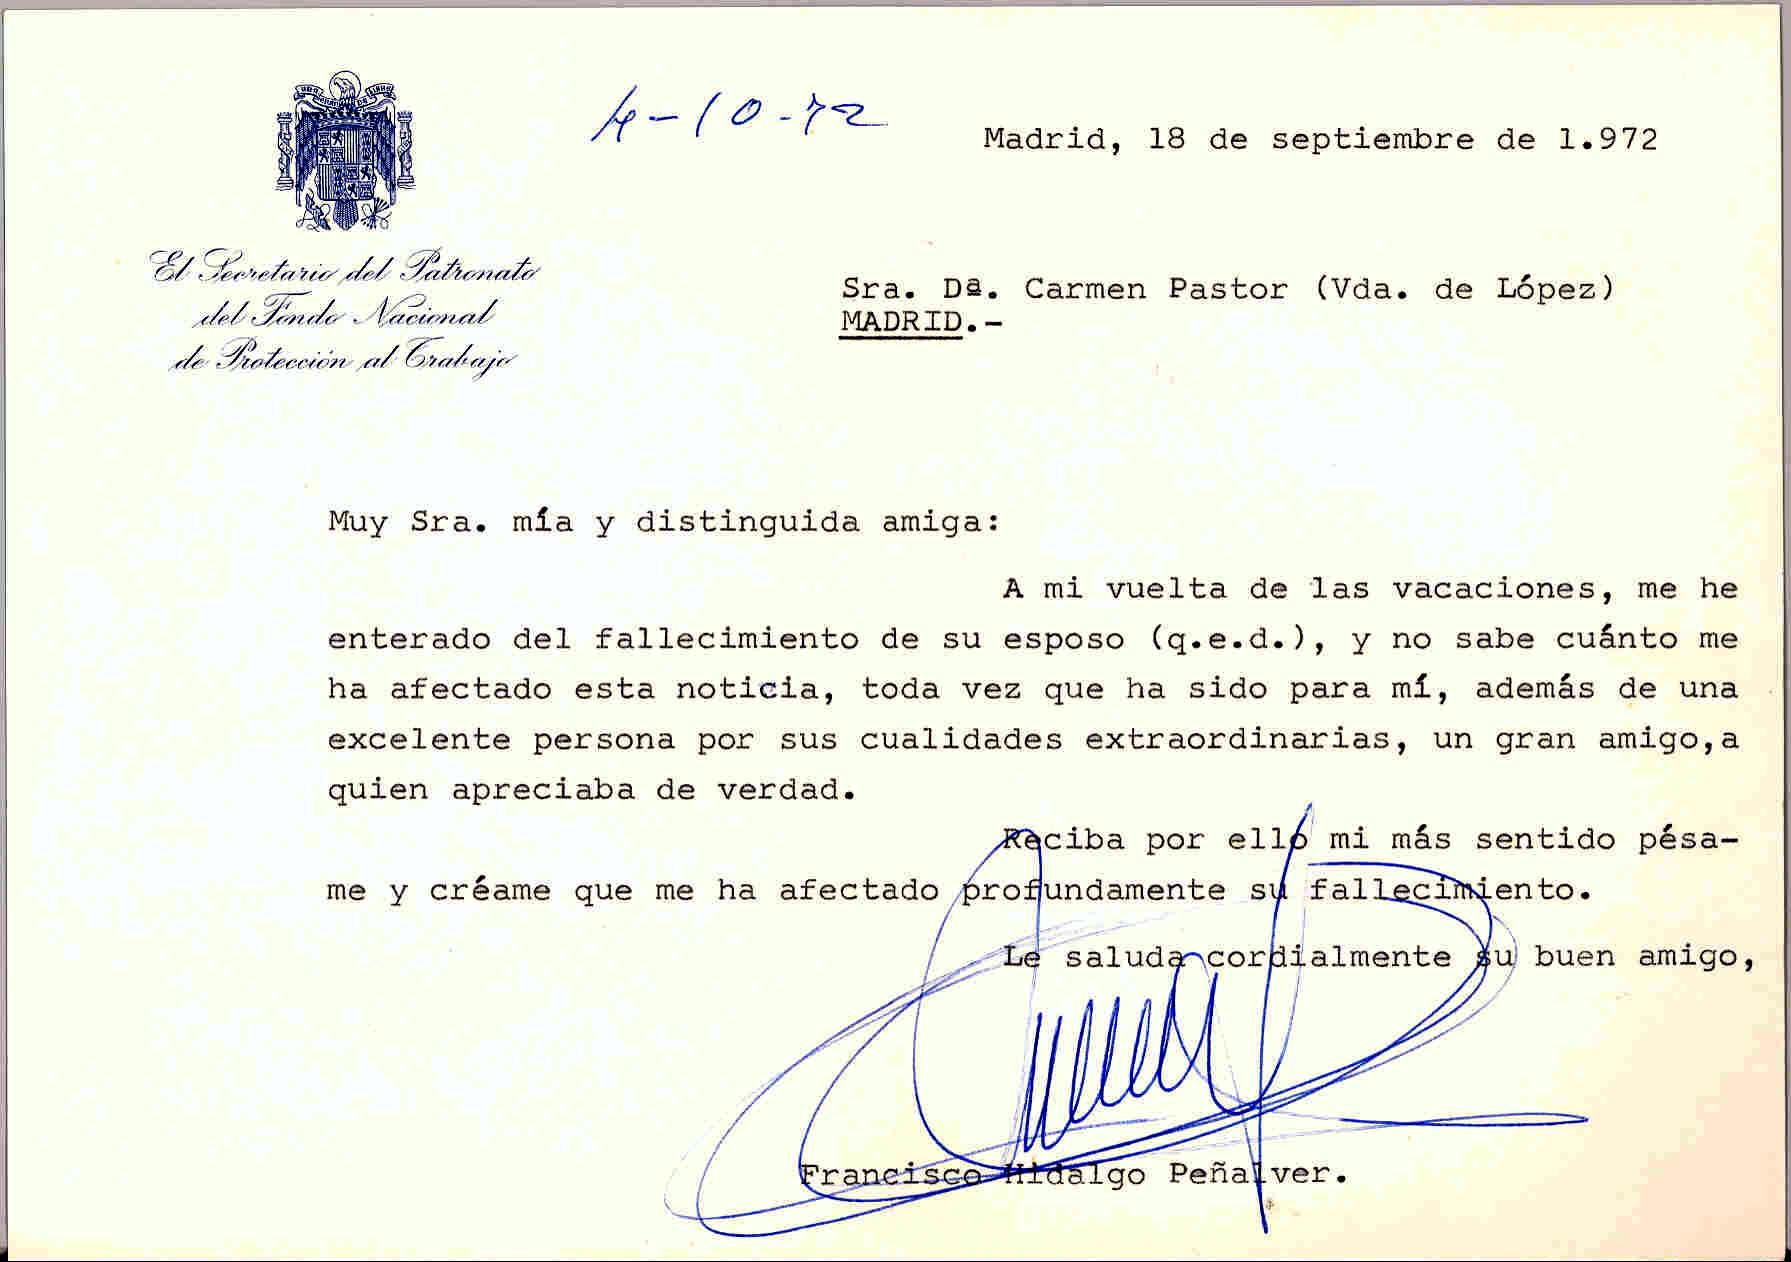 Carta de Hidalgo Peñalver expresando su pésame por la muerte de Juan López